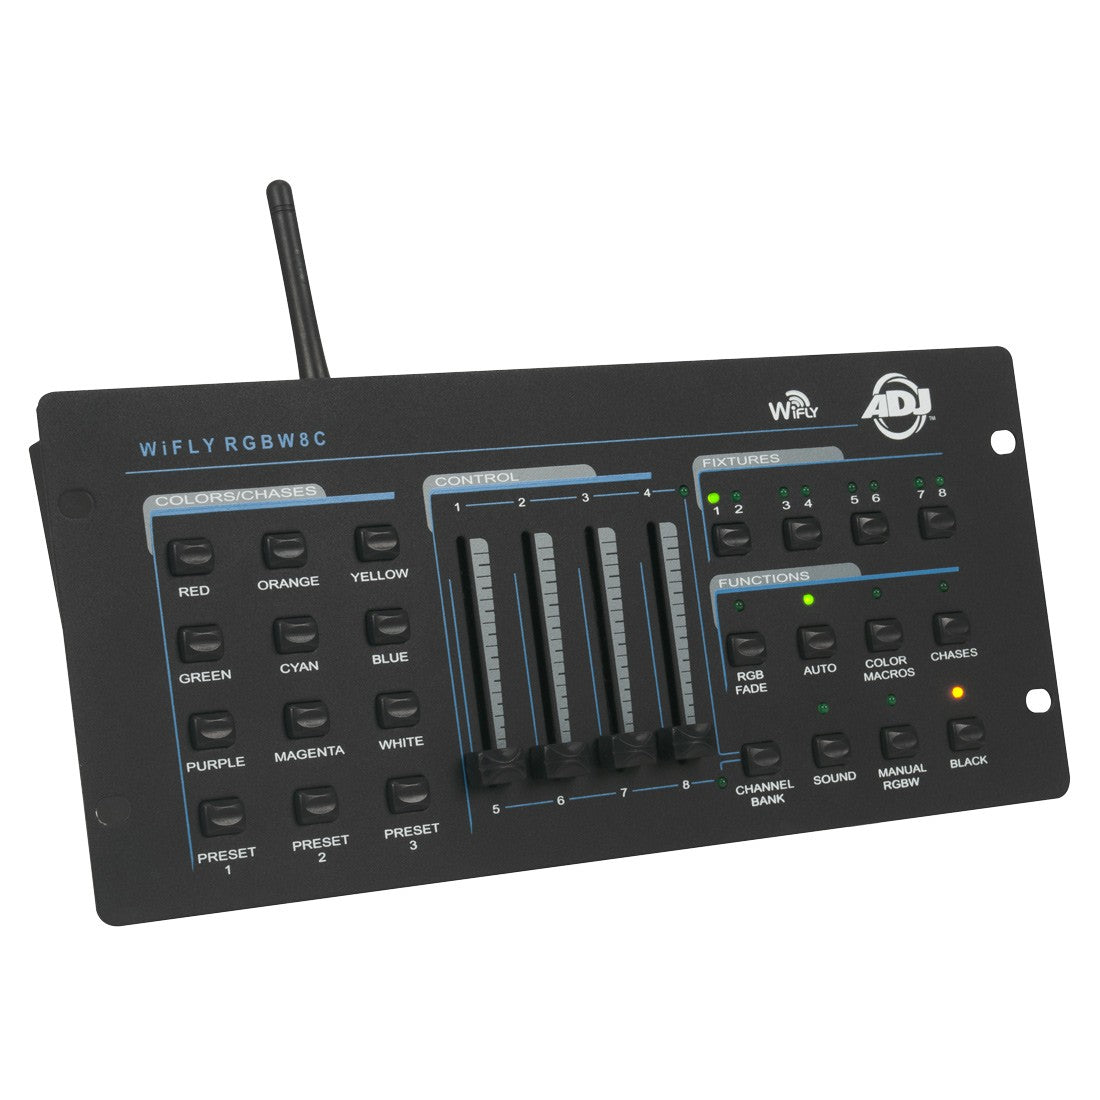 American DJ WiFly RGBW8C 64Ch WIFI DMX LED Controller